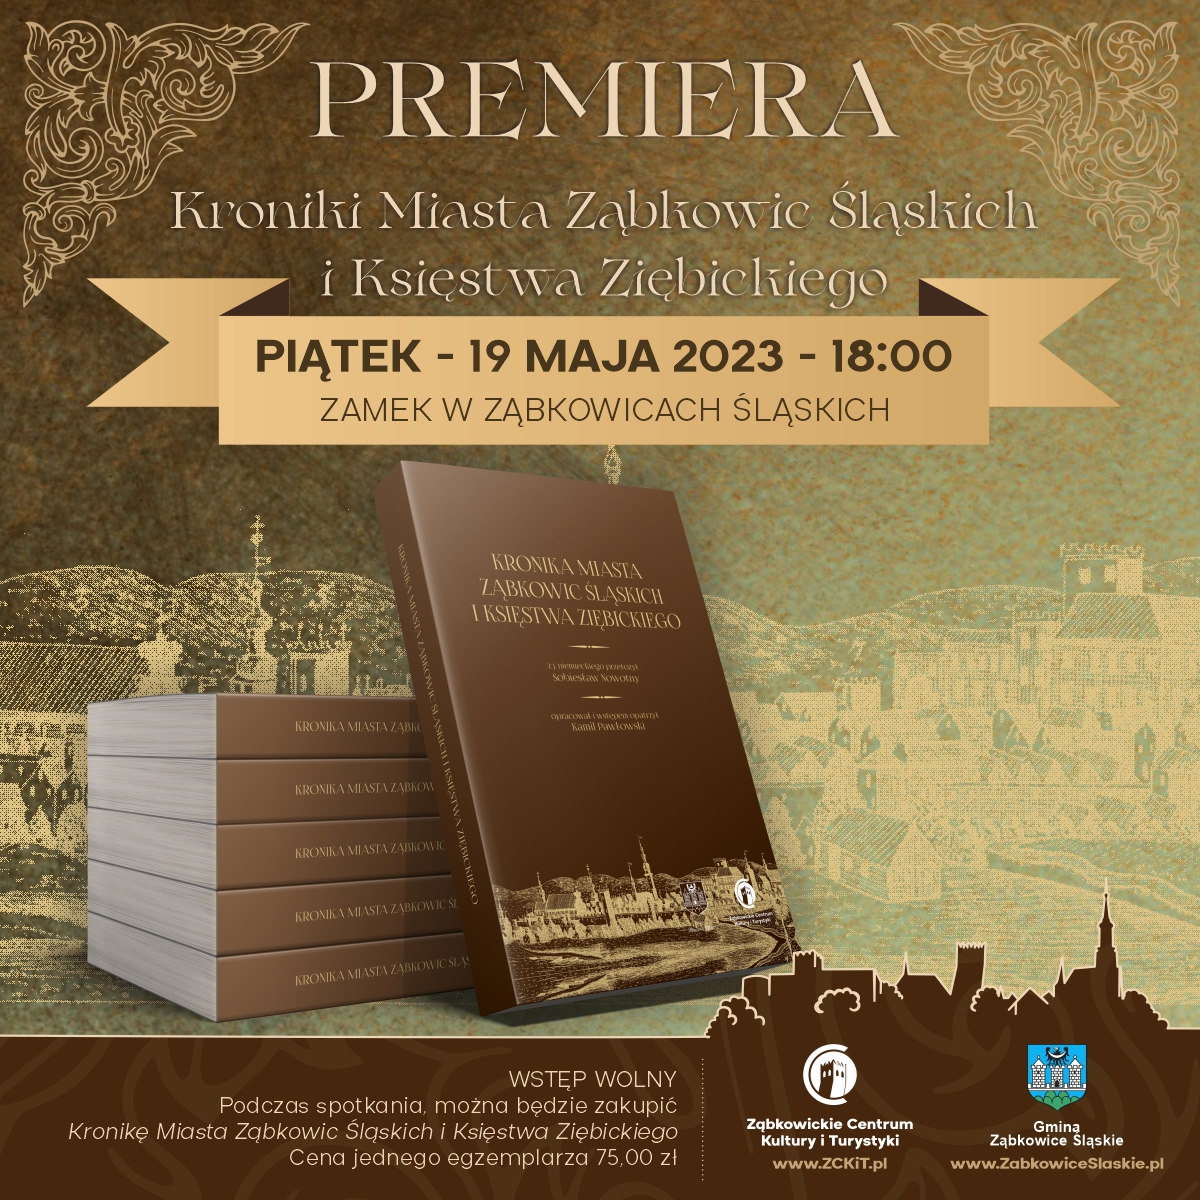 Plakat informujący o premierze Kroniki Miasta Ząbkowic Śląskich i Księstwa Ziębickiego 19 maja 2023 o godzinie 18:00 na Zamku w Ząbkowicach Śląskich.